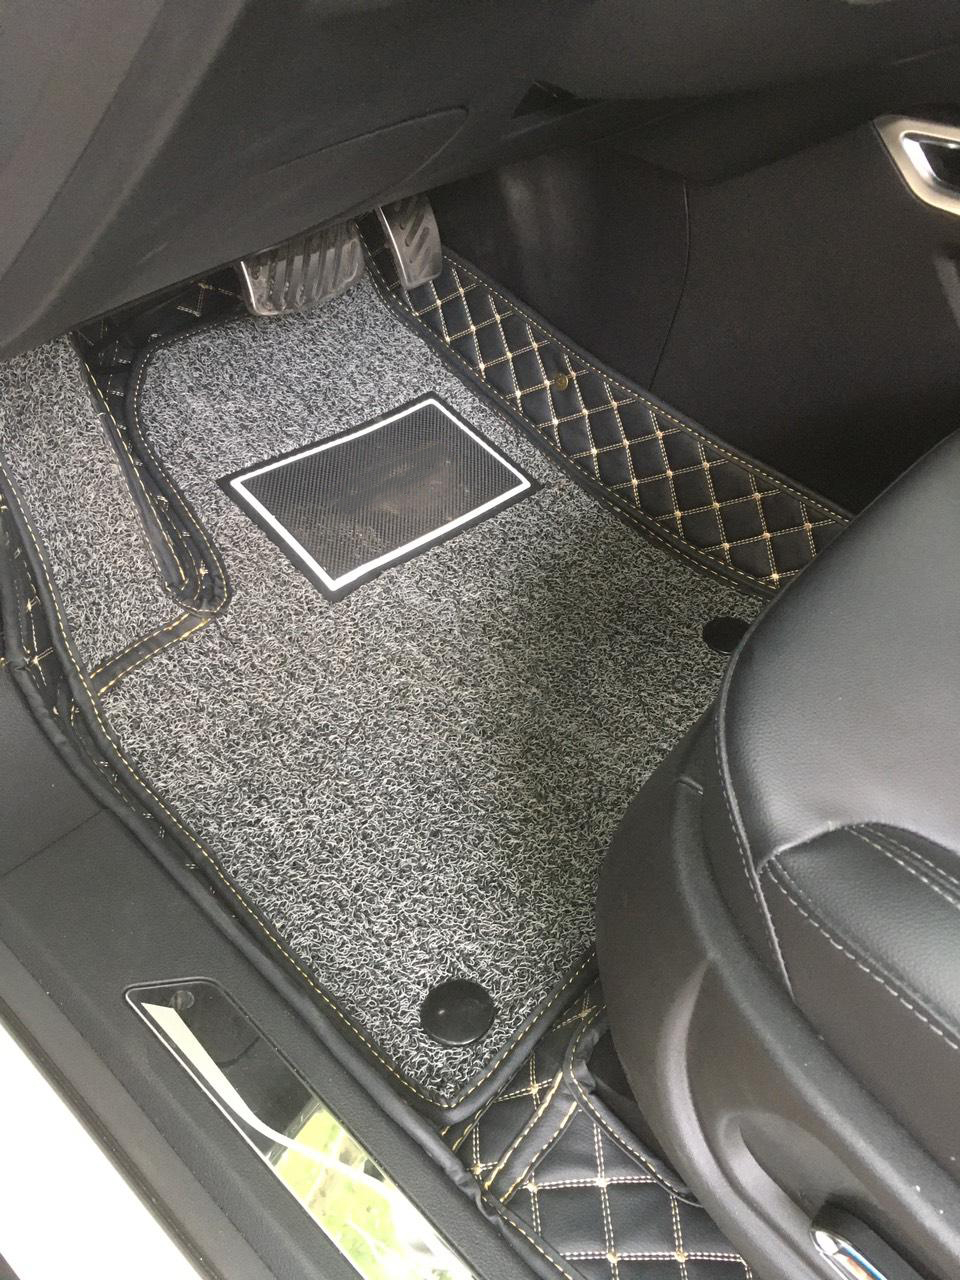 Thảm sàn ô tô 6D dành cho xe Zotye T800 da Thường màu T2.3 + R3 hình ảnh thật chụp bằng điện thoại không chỉnh sửa có video hướng dẫn lắp đặt tại nhà